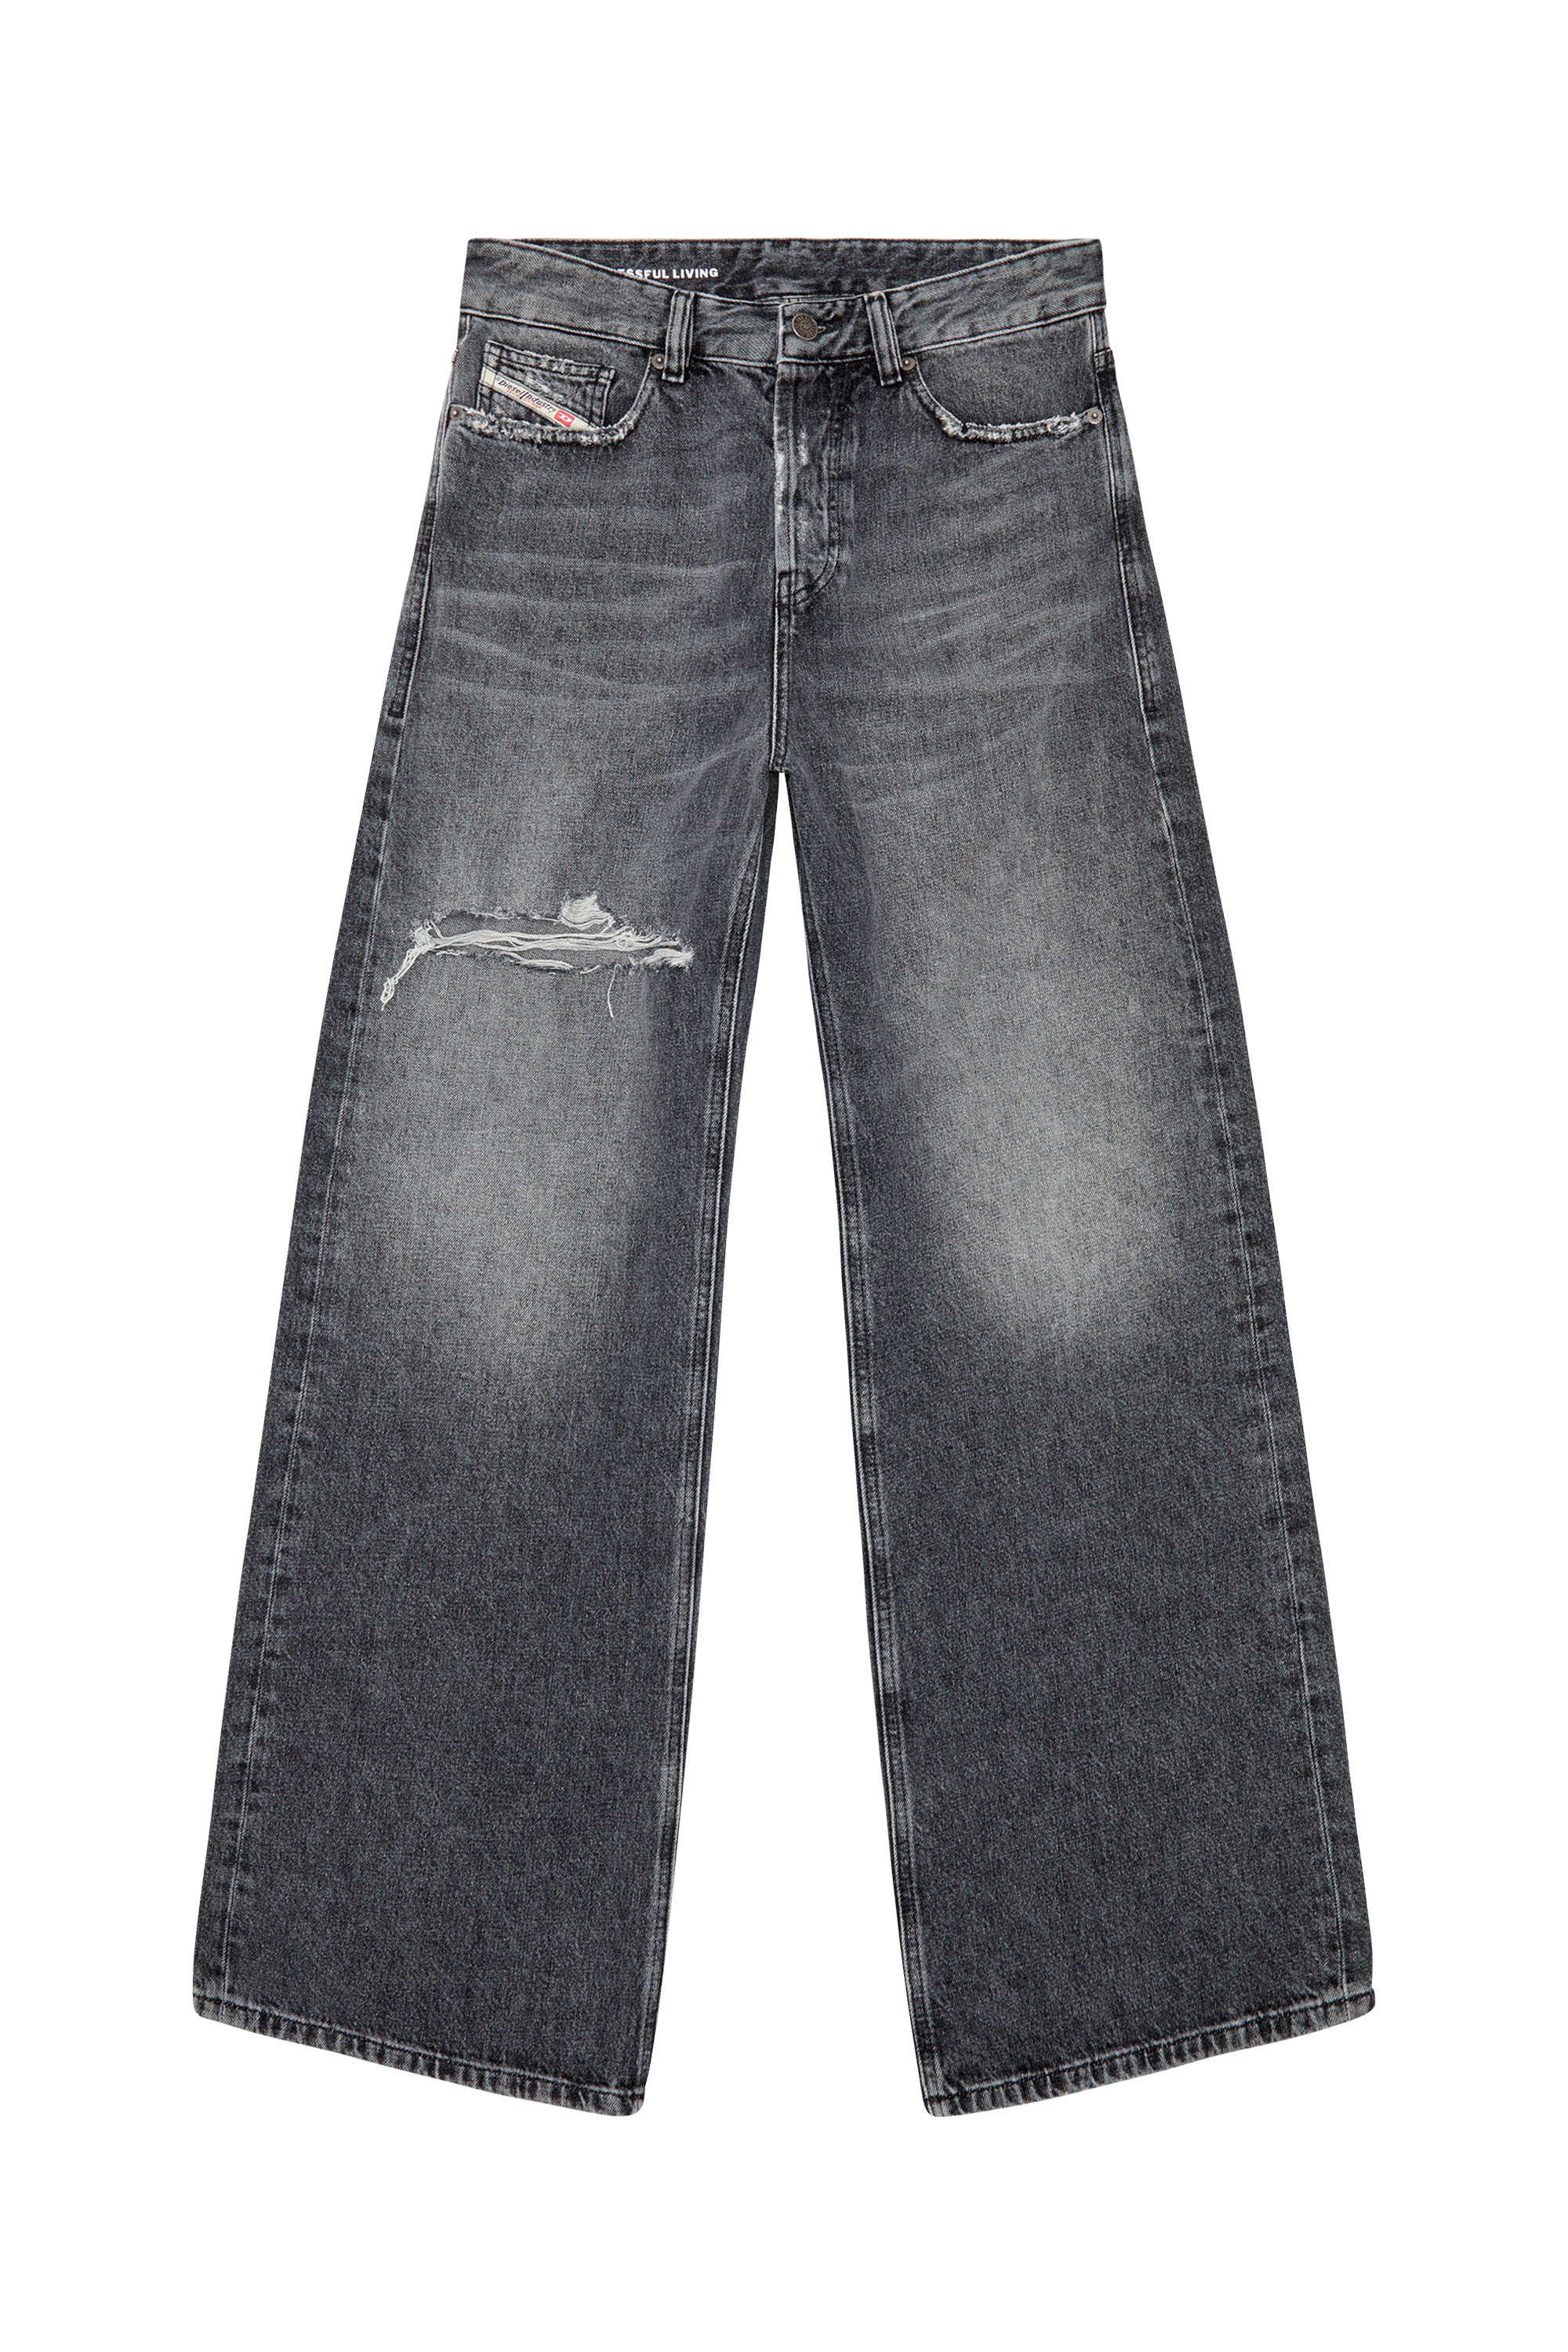 Women's Diesel Jeans: Straight, Boyfriend, Wide, Flare, Cargo 